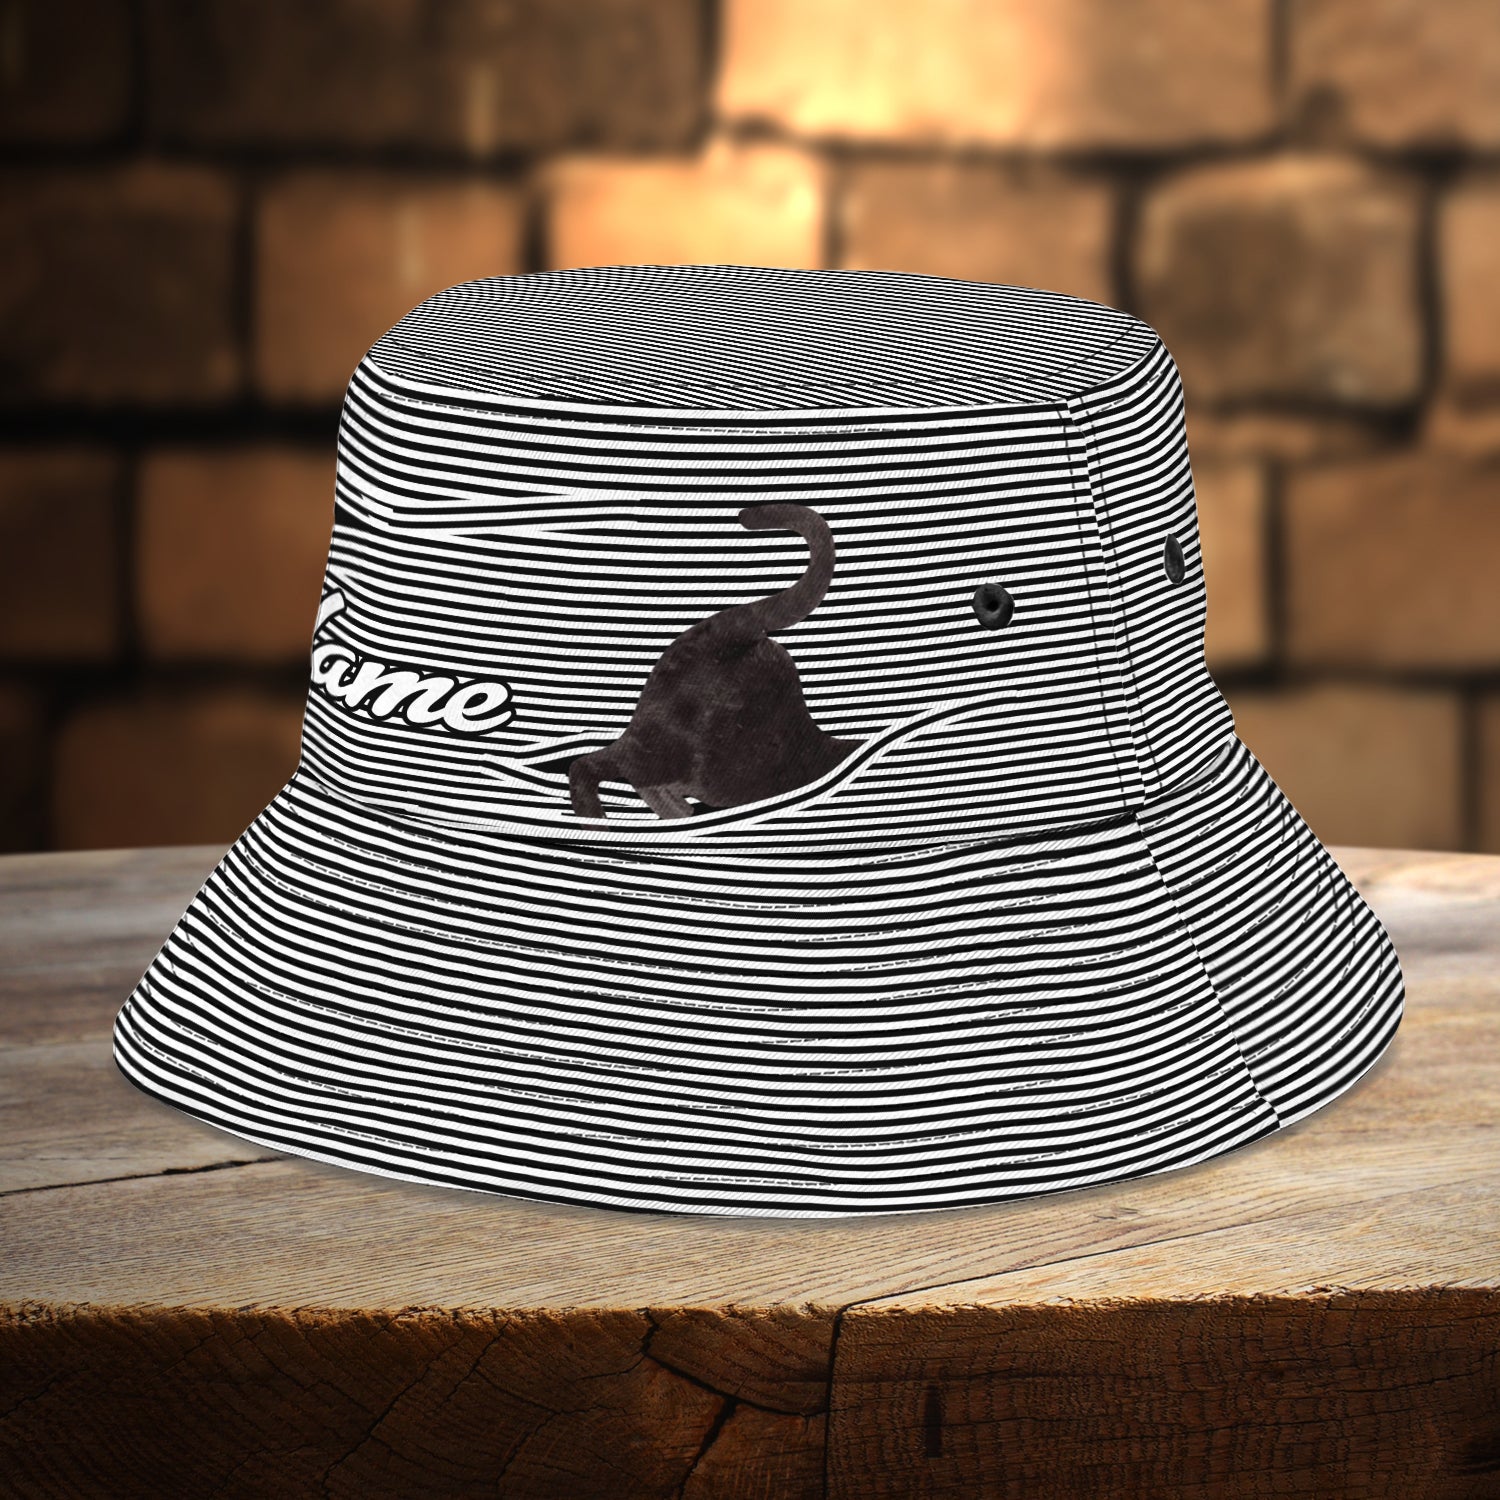 Custom Bucket Hat - Lovely Cat - Fuly 14